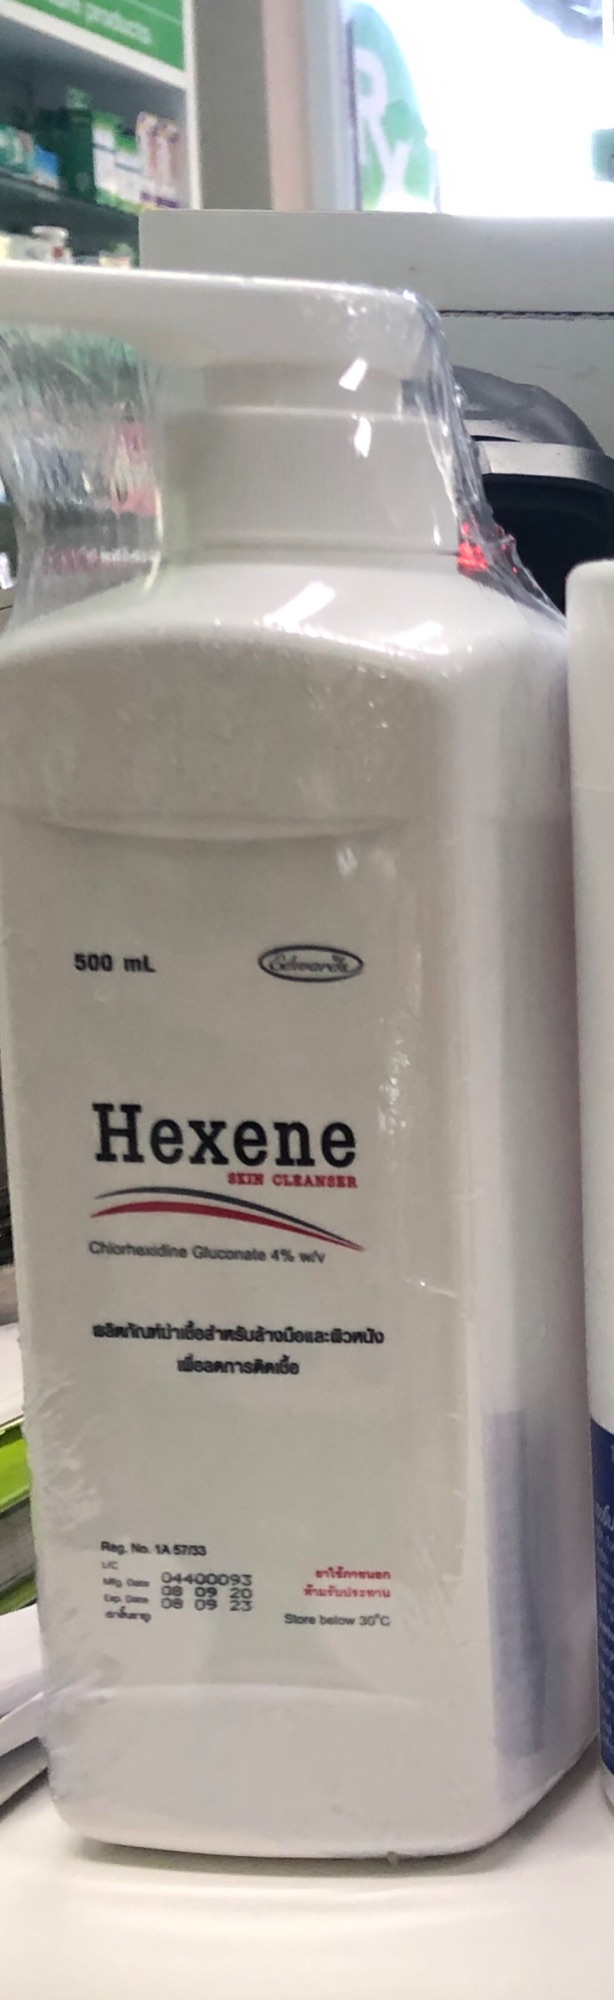 Hexene skin cleanser 500 ml มีหัวปั๊ม